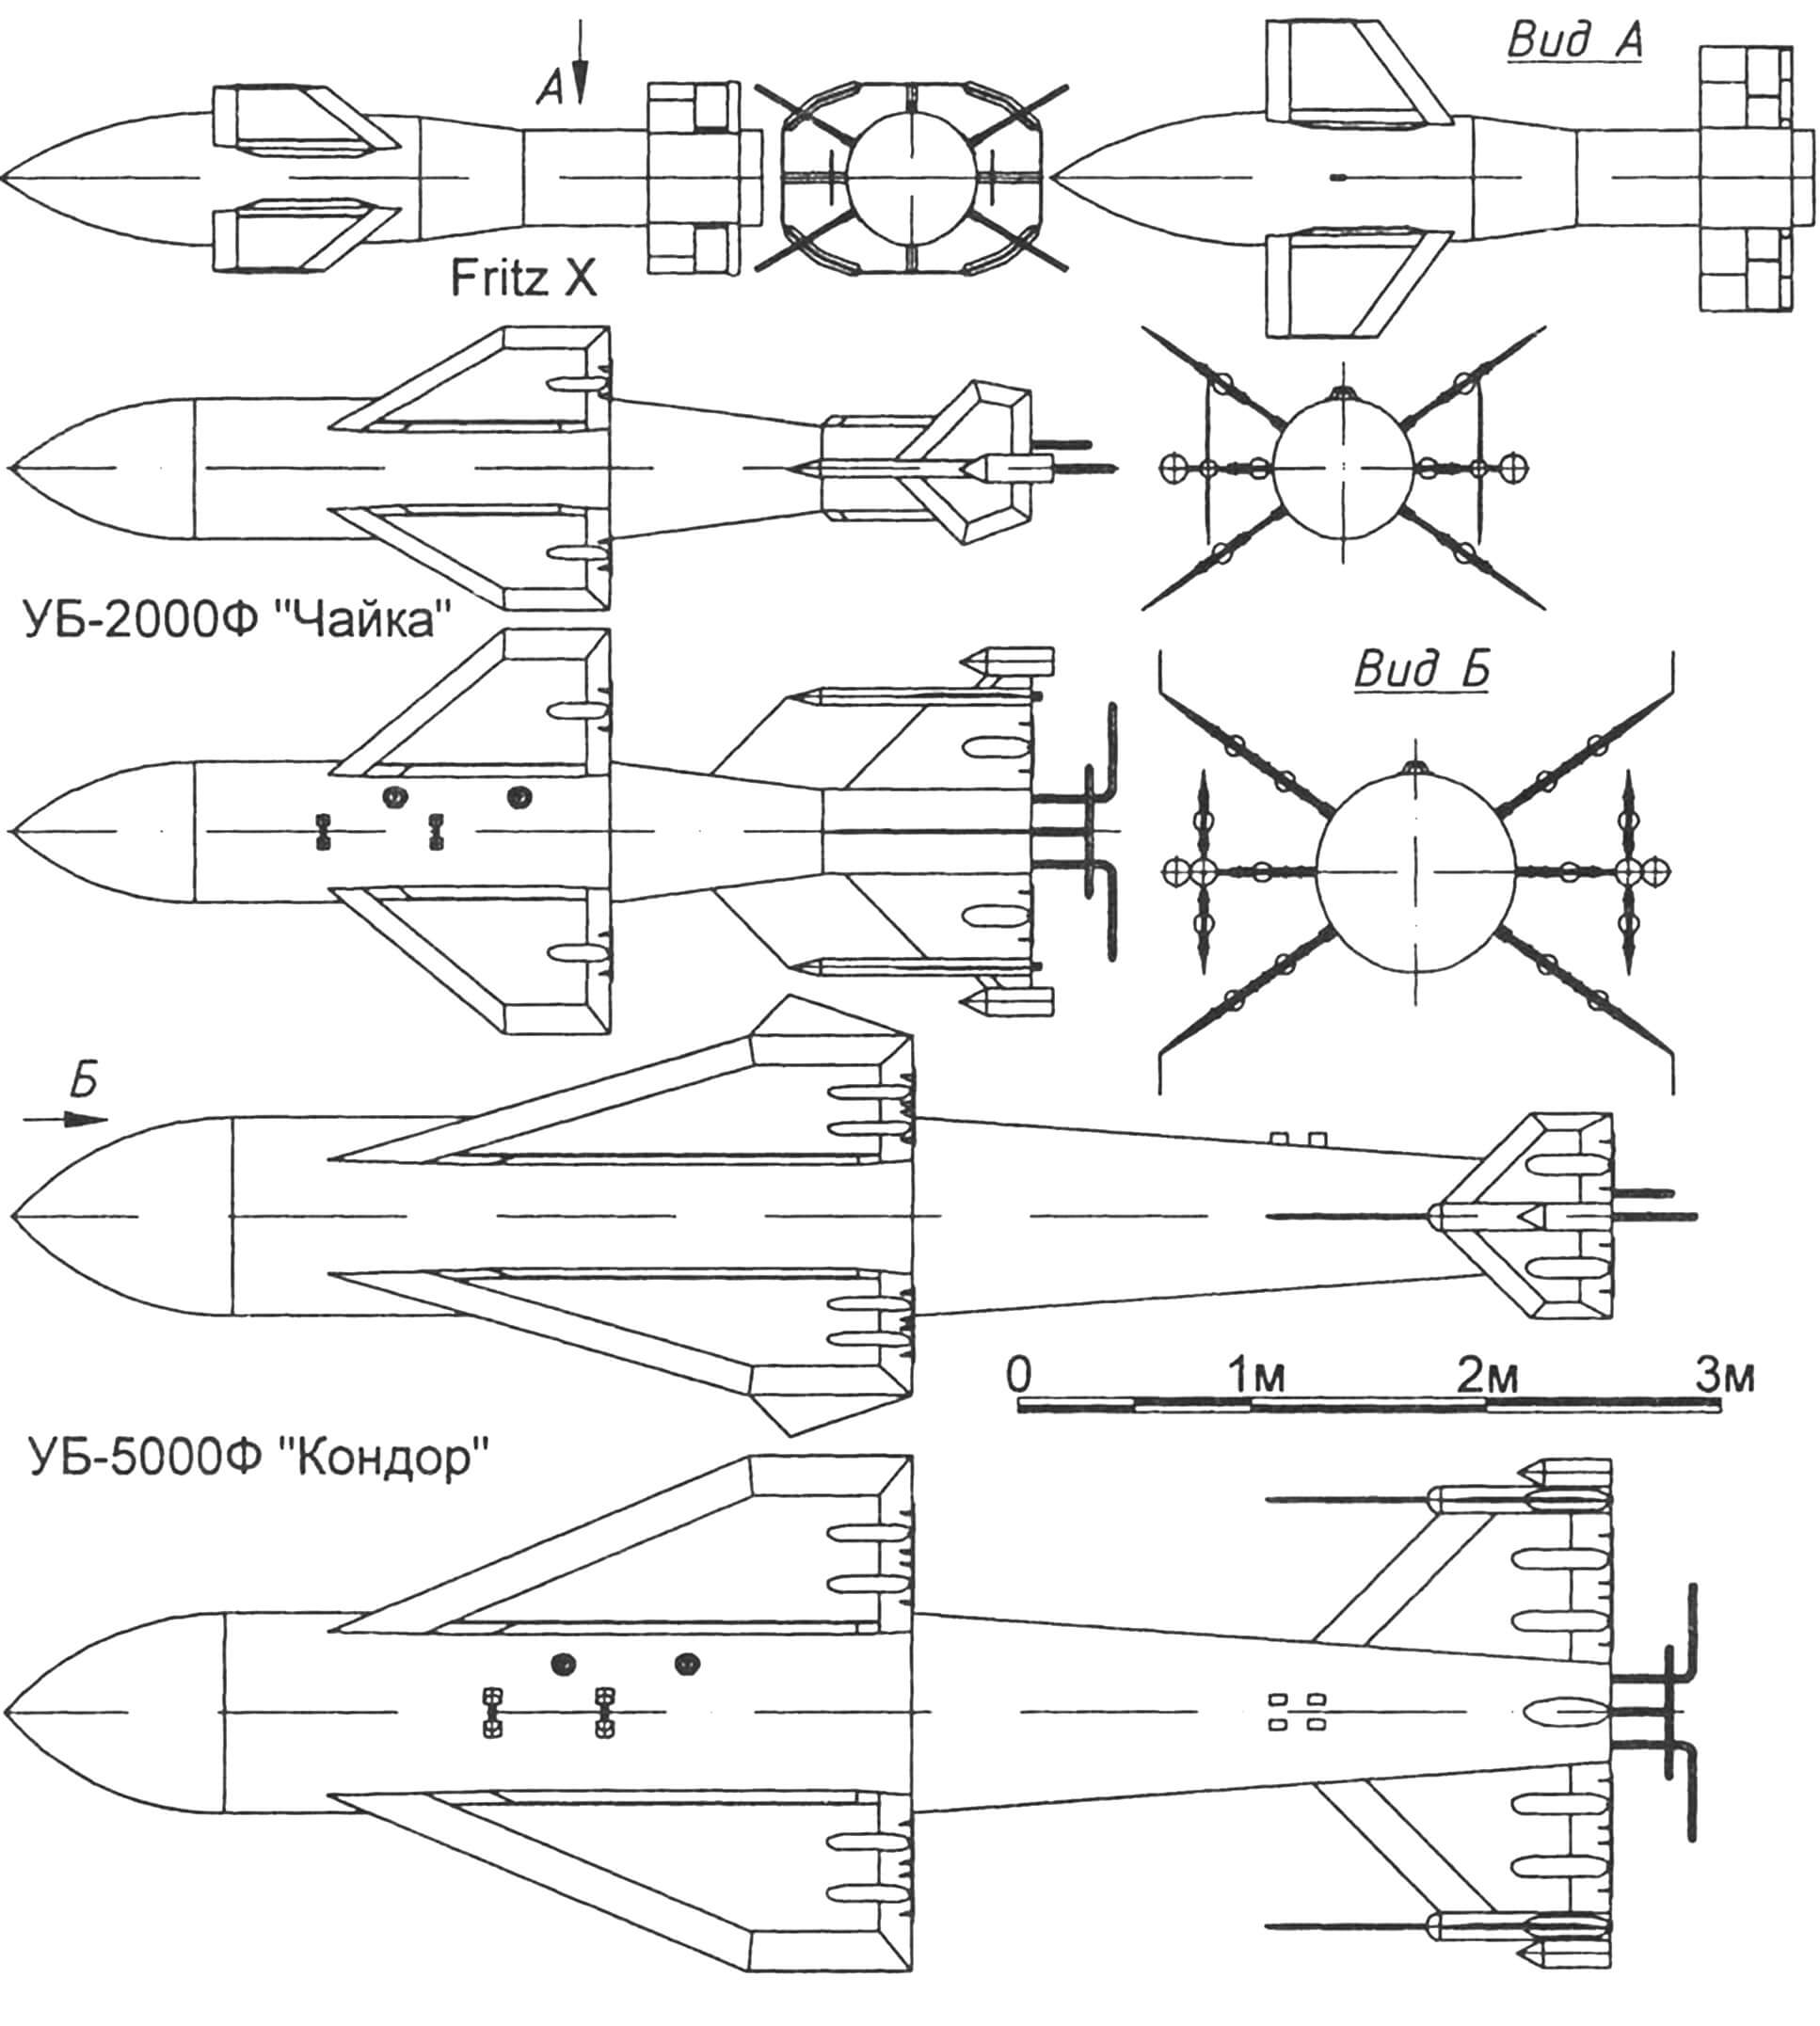 Управляемые авиабомбы, проходившие испытания в НИИ ВВС в конце 1940-х — середине 1950-х годов